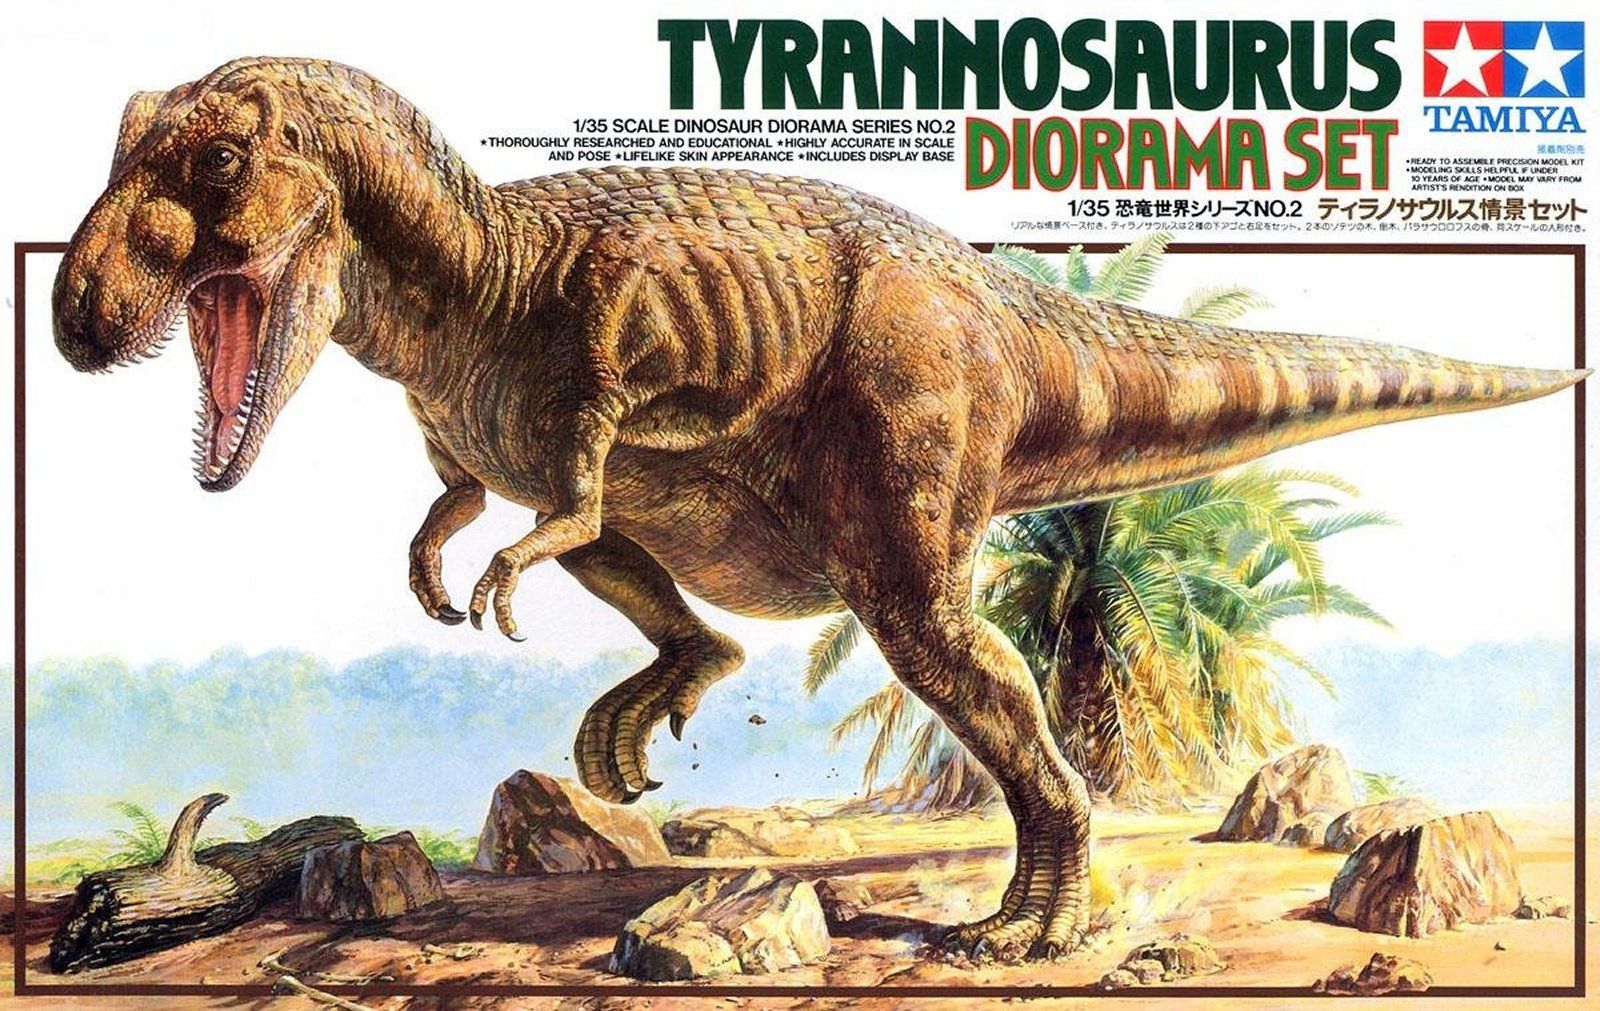 60102  фигуры  Tyrannosaurus Diorama set  (1:35)